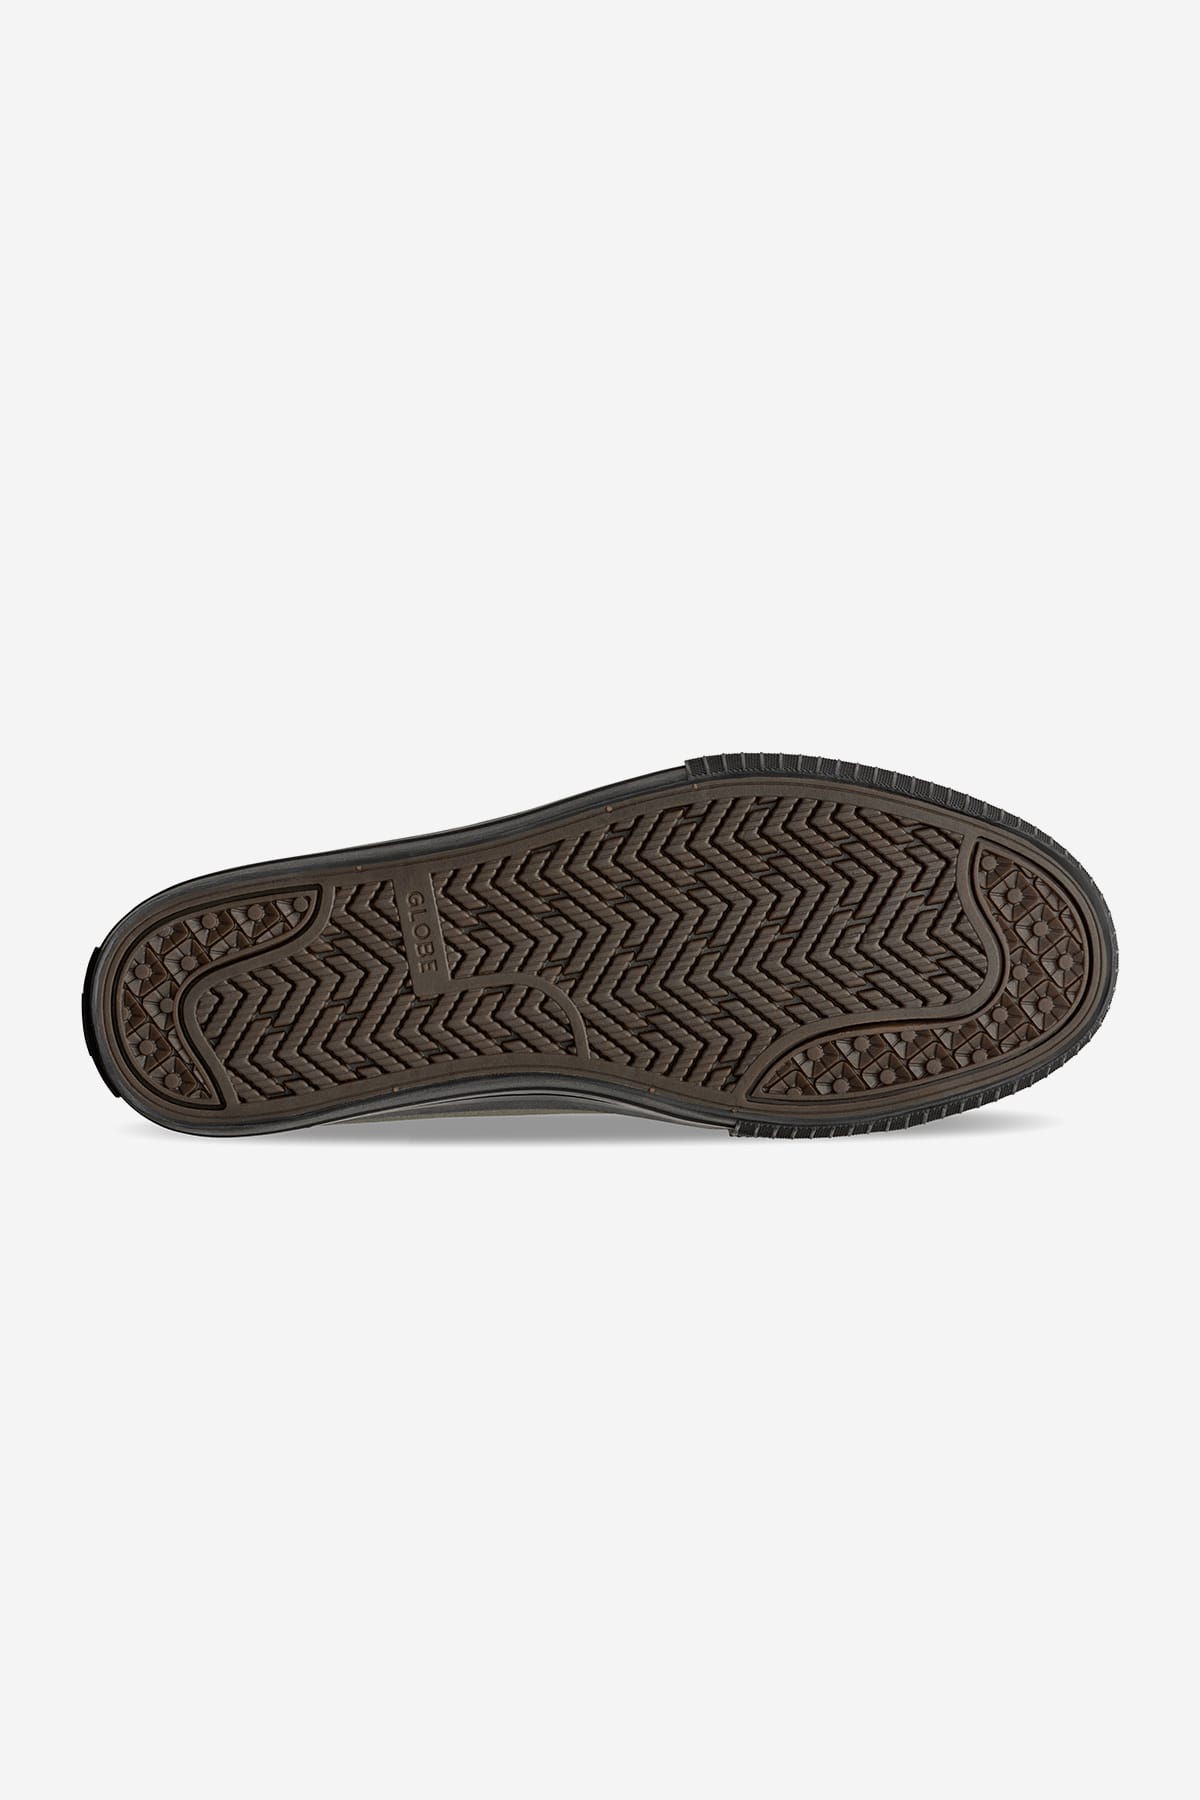 Globe - Gillette - Escuro Olive/Preto - skateboard Sapatos